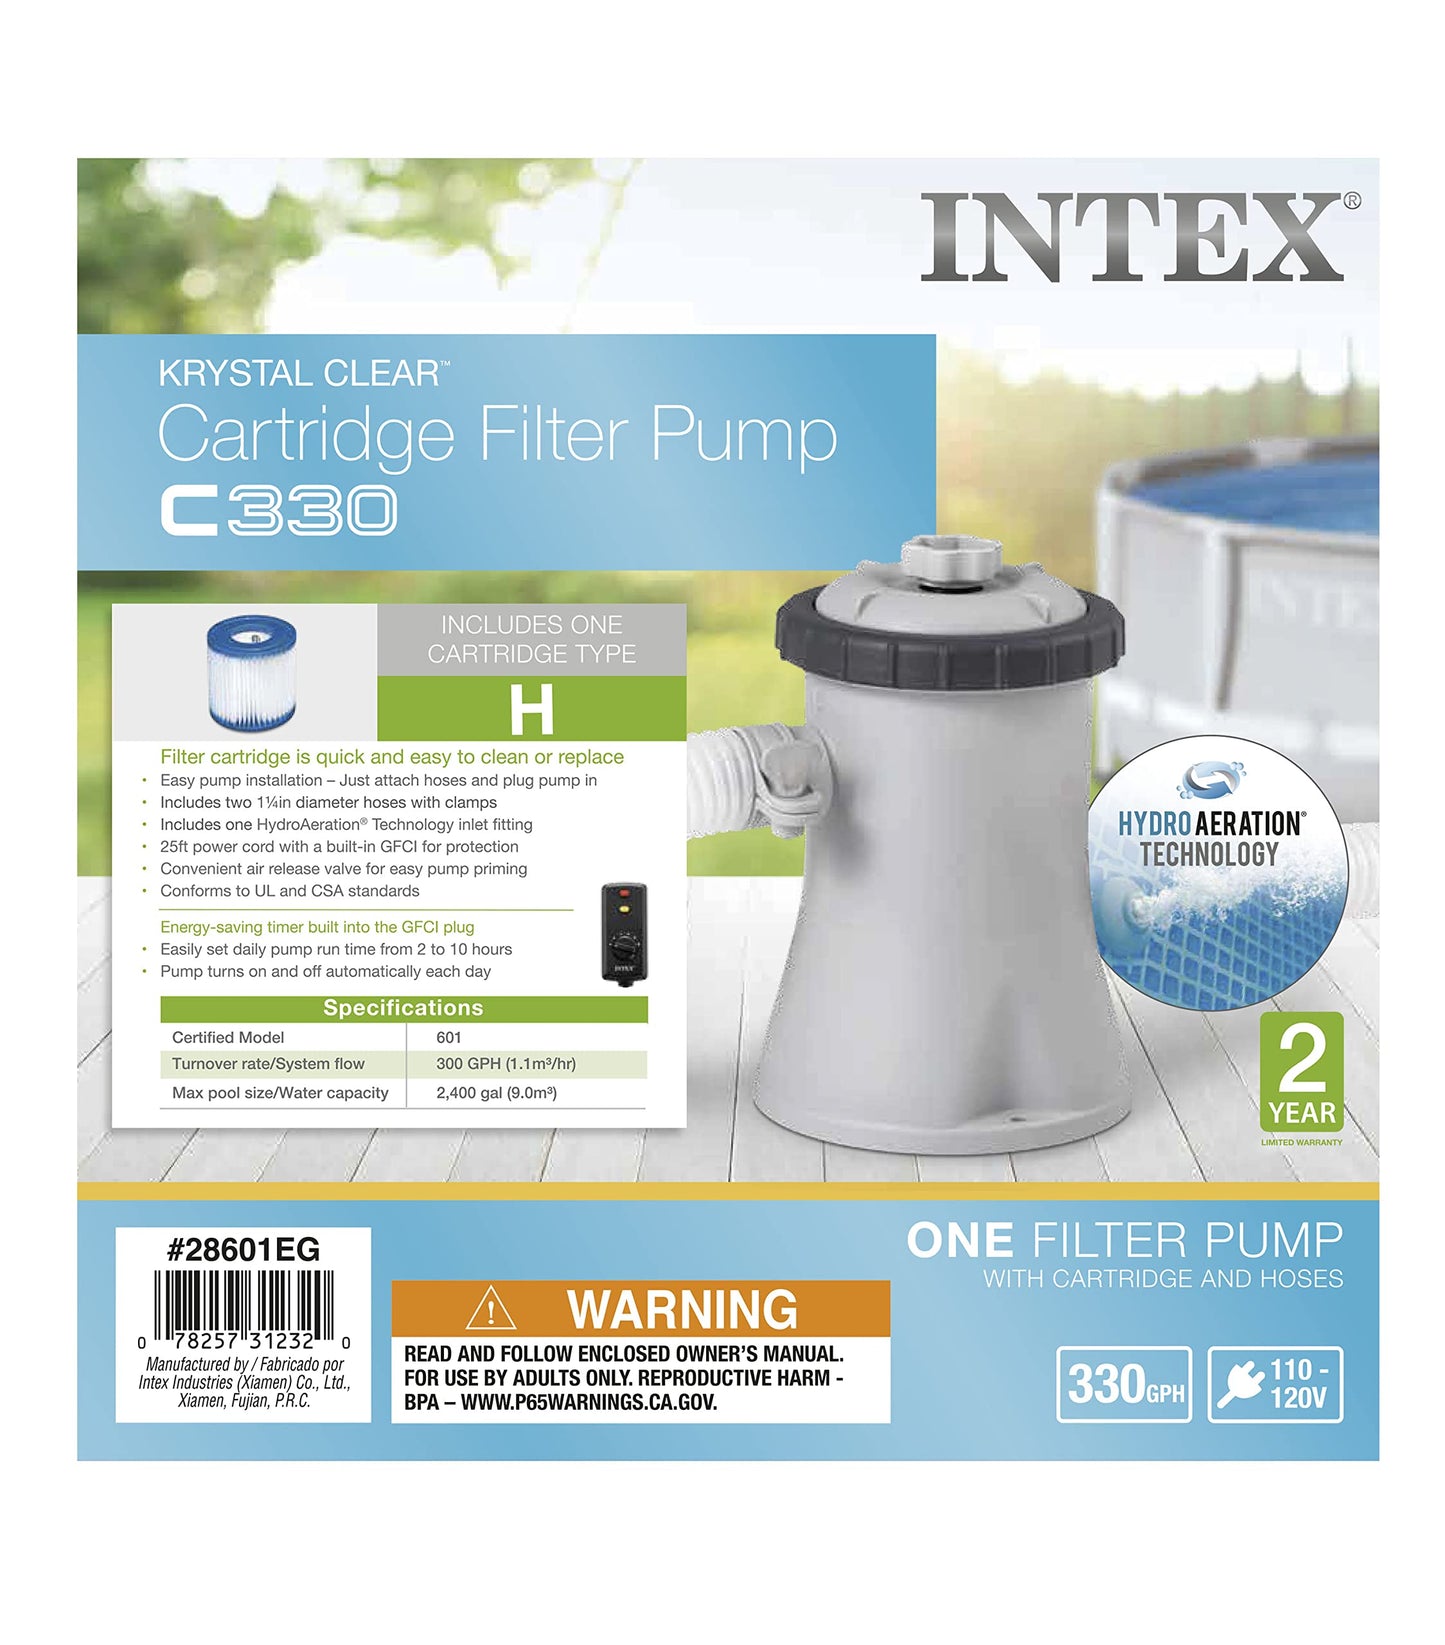 INTEX 28601EG C330 Pompe de filtration à cartouche transparente Krystal pour piscines hors sol, débit de la pompe 330 GPH 330 gallons par heure